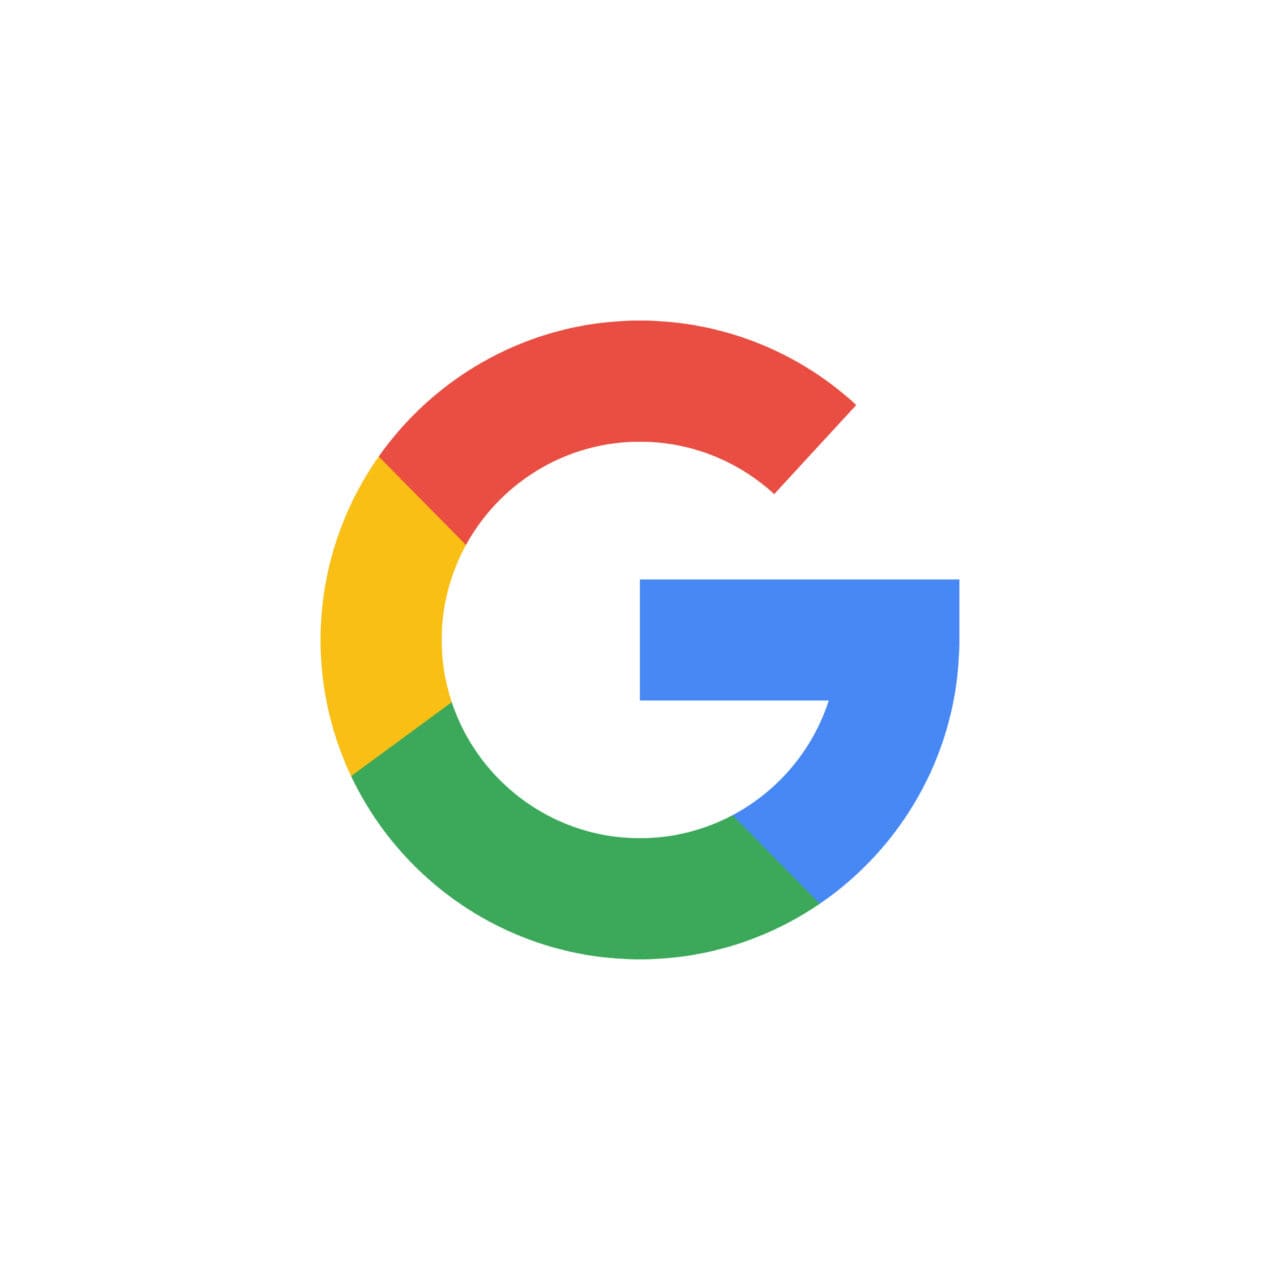 Google colour logo on white background